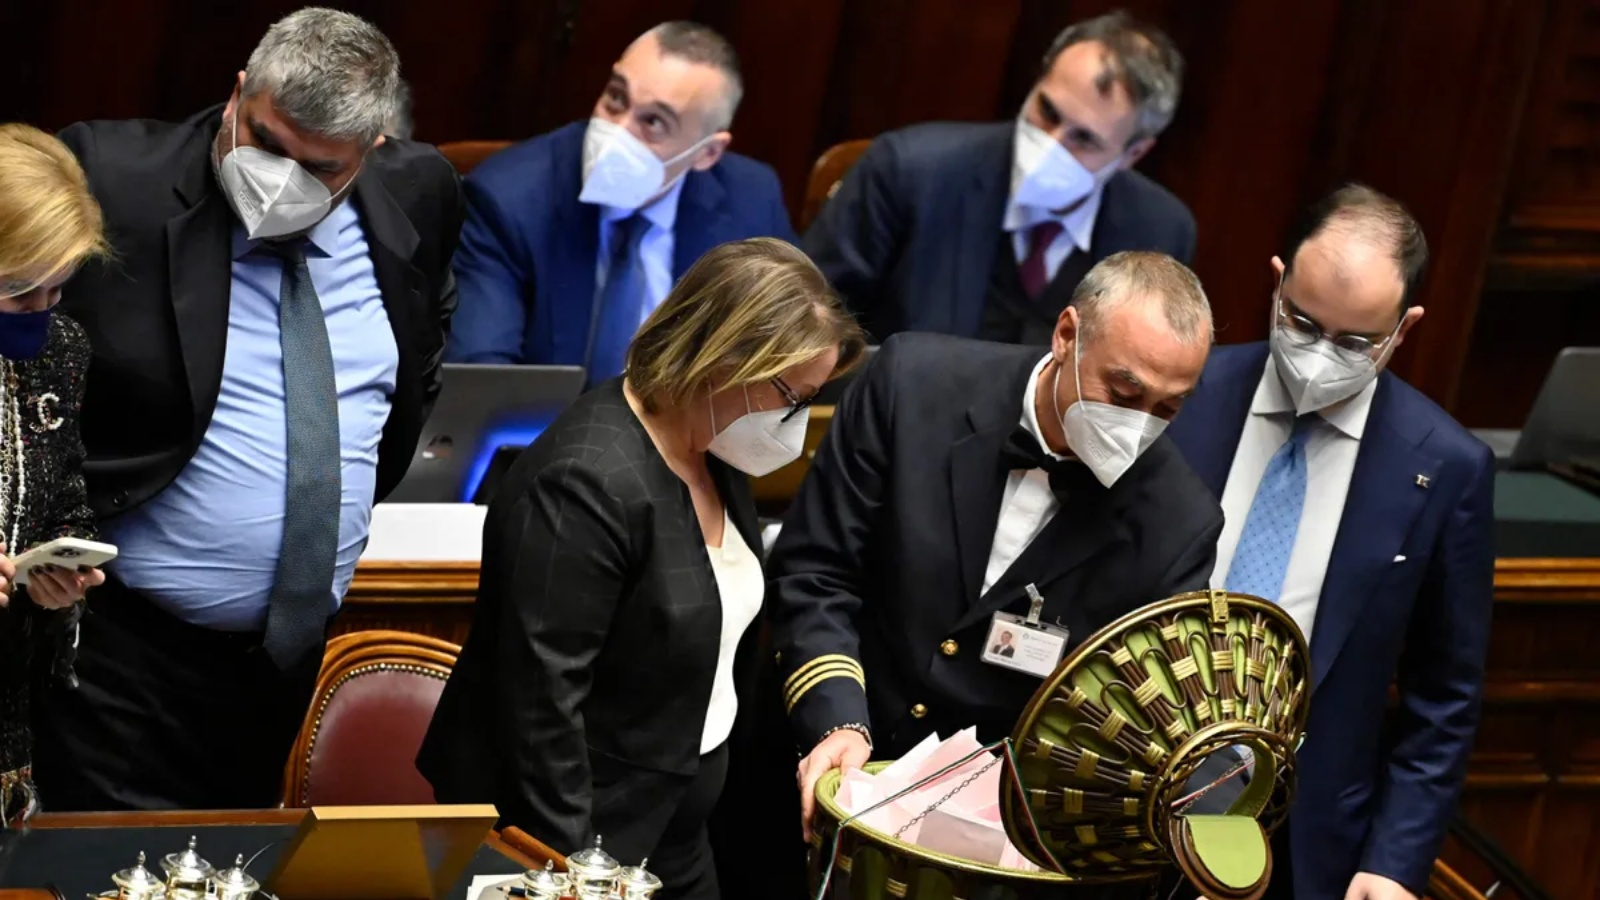 المرشدون يفتحون صندوق اقتراع خلال الجولة الثالثة من التصويت لاختيار رئيس إيطاليا الجديد في برلمان روما يوم 26 يناير.